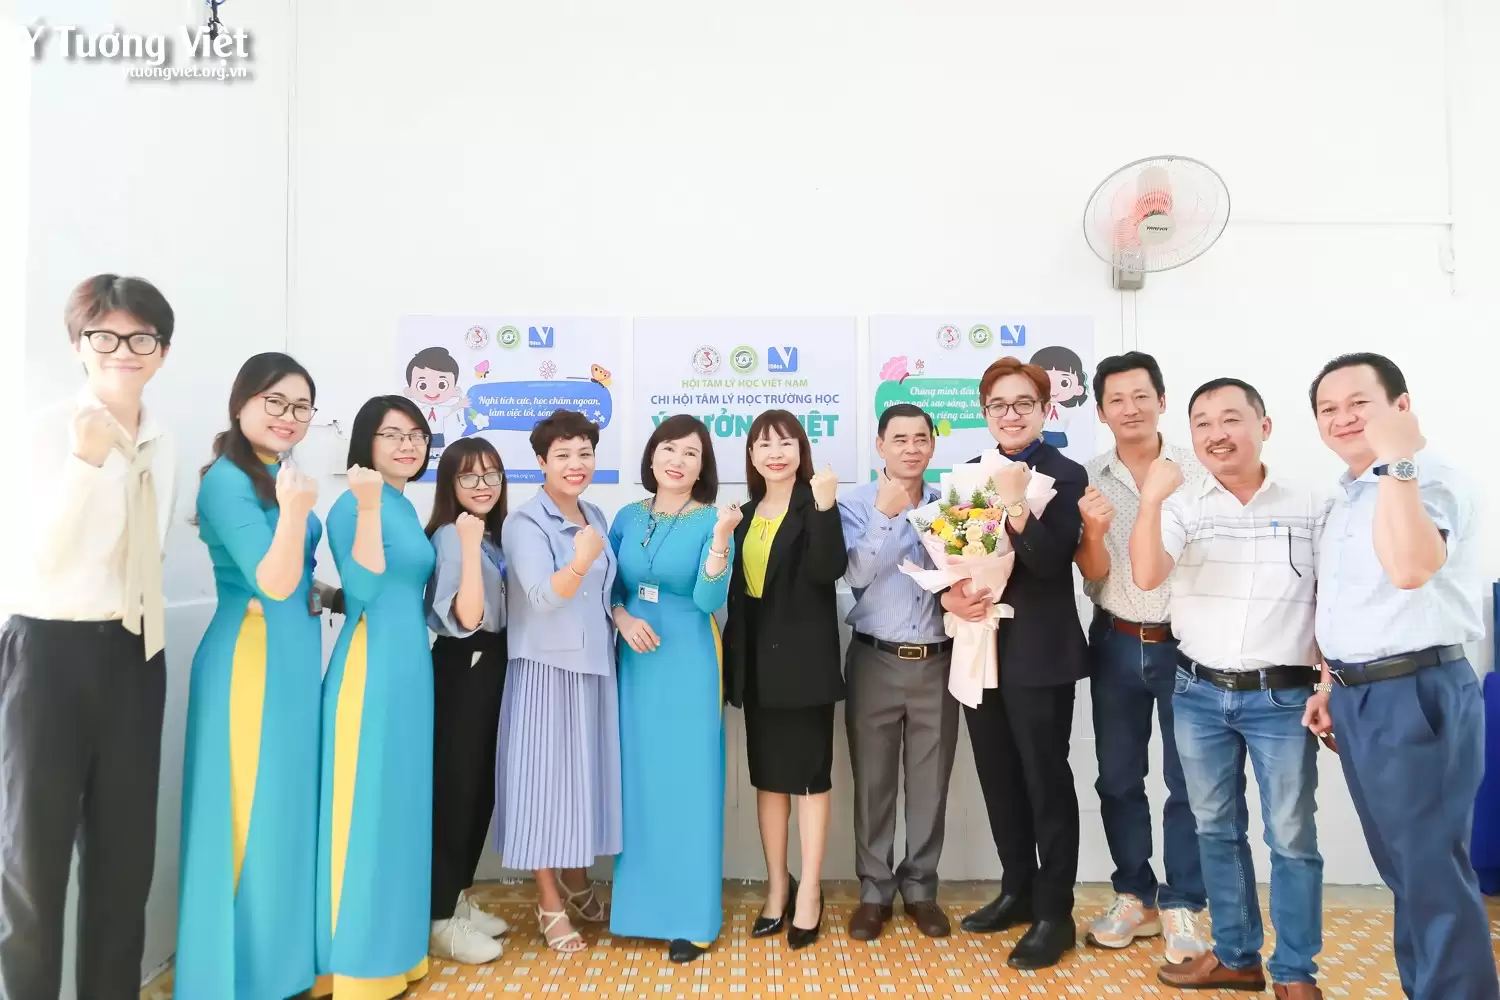 Dự án tư vấn tâm lý học đường trường TH Phan Chu Trinh | Ra mắt phòng Tâm lý học đường – Chuyên đề “Em biết chăm sóc sức khoẻ tinh thần”